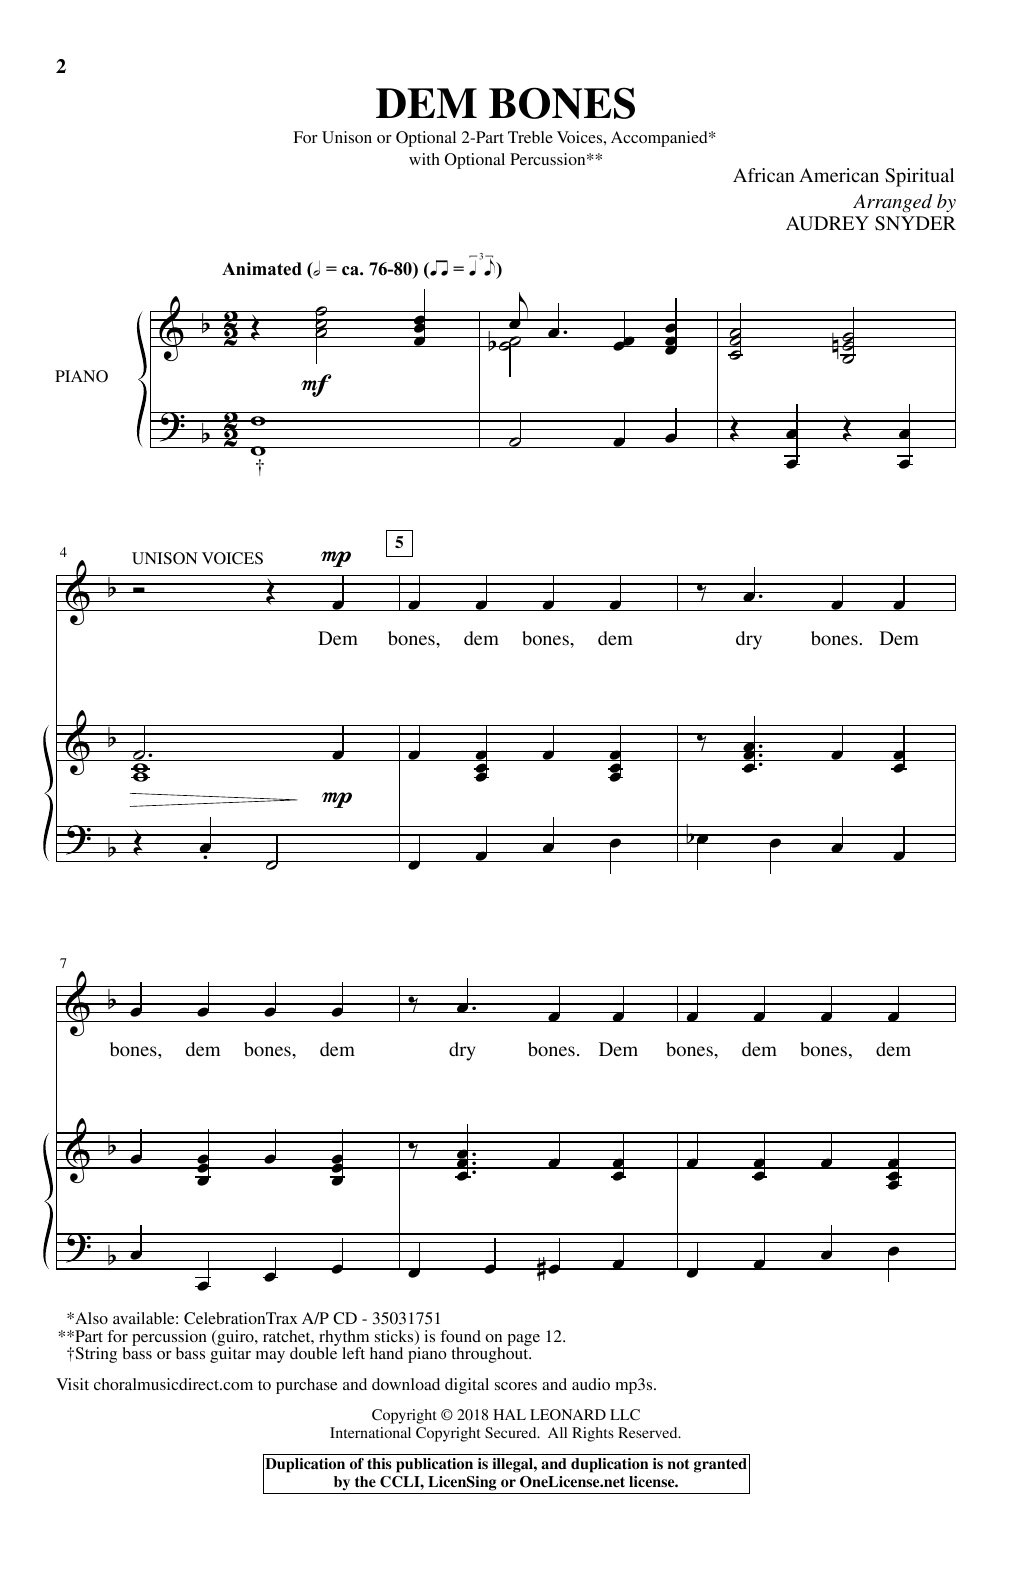 Audrey Snyder Dem Bones Sheet Music Notes & Chords for Choral - Download or Print PDF